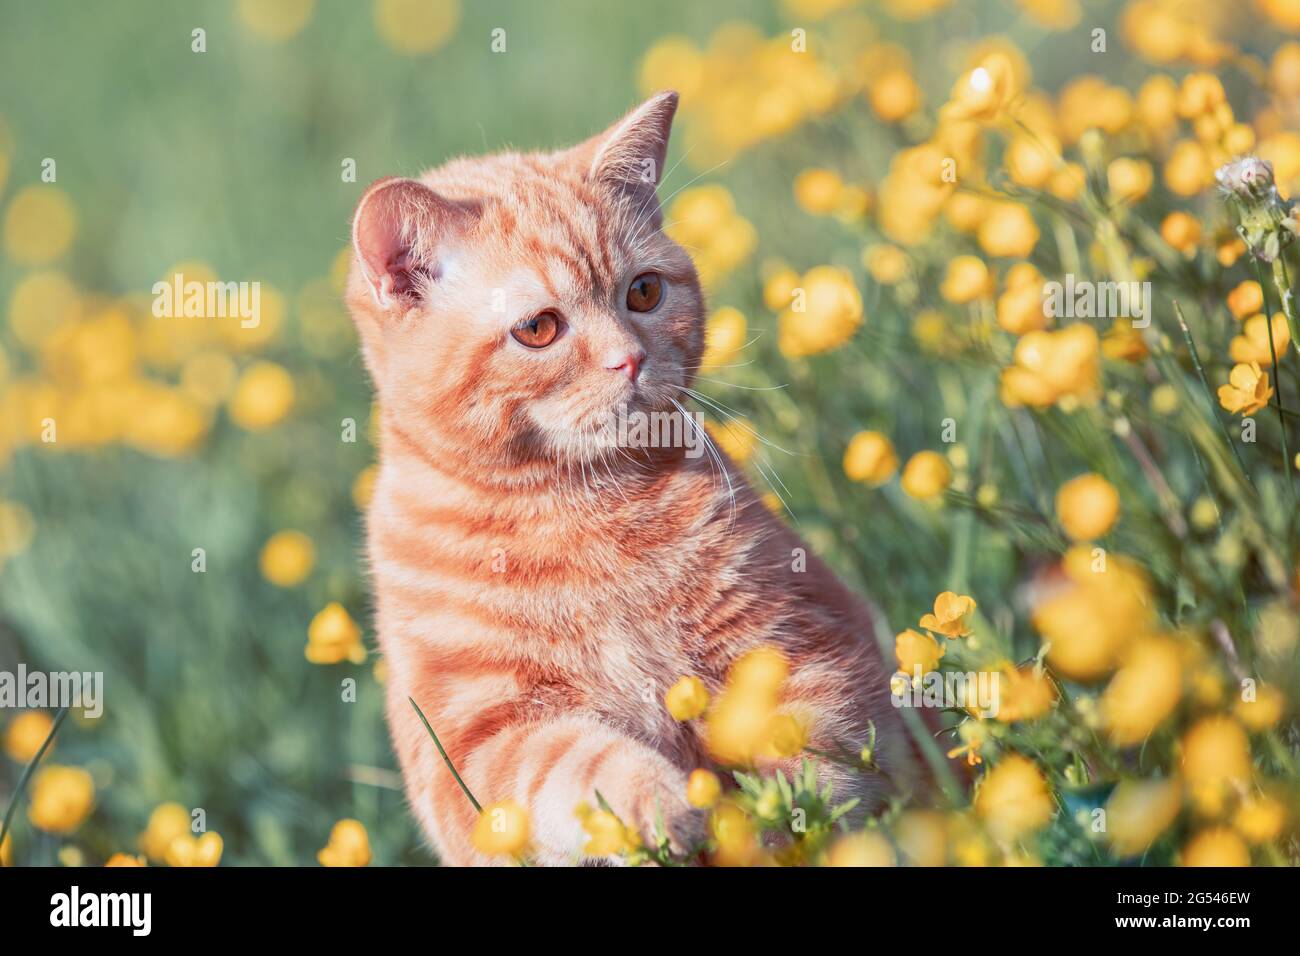 Small ginger kitten sitting on the flower lawn. Cat enjoying spring Stock Photo